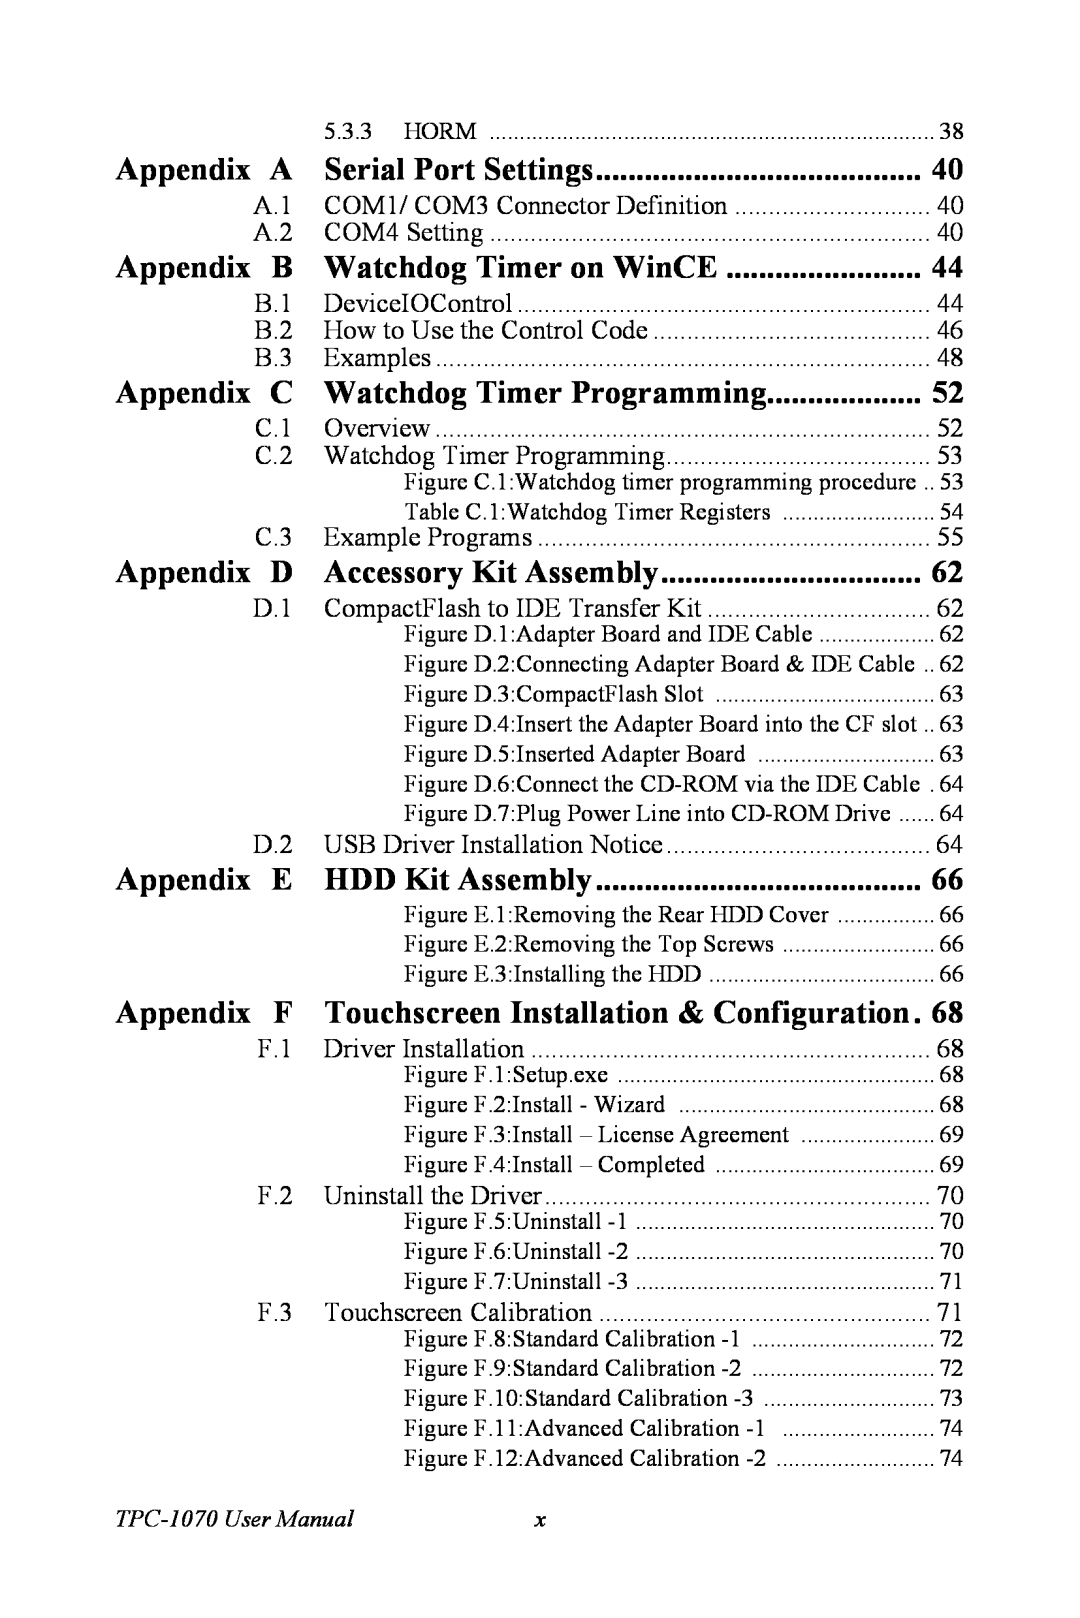 Intel TPC-1070 user manual COM1/ COM3 Connector Definition 